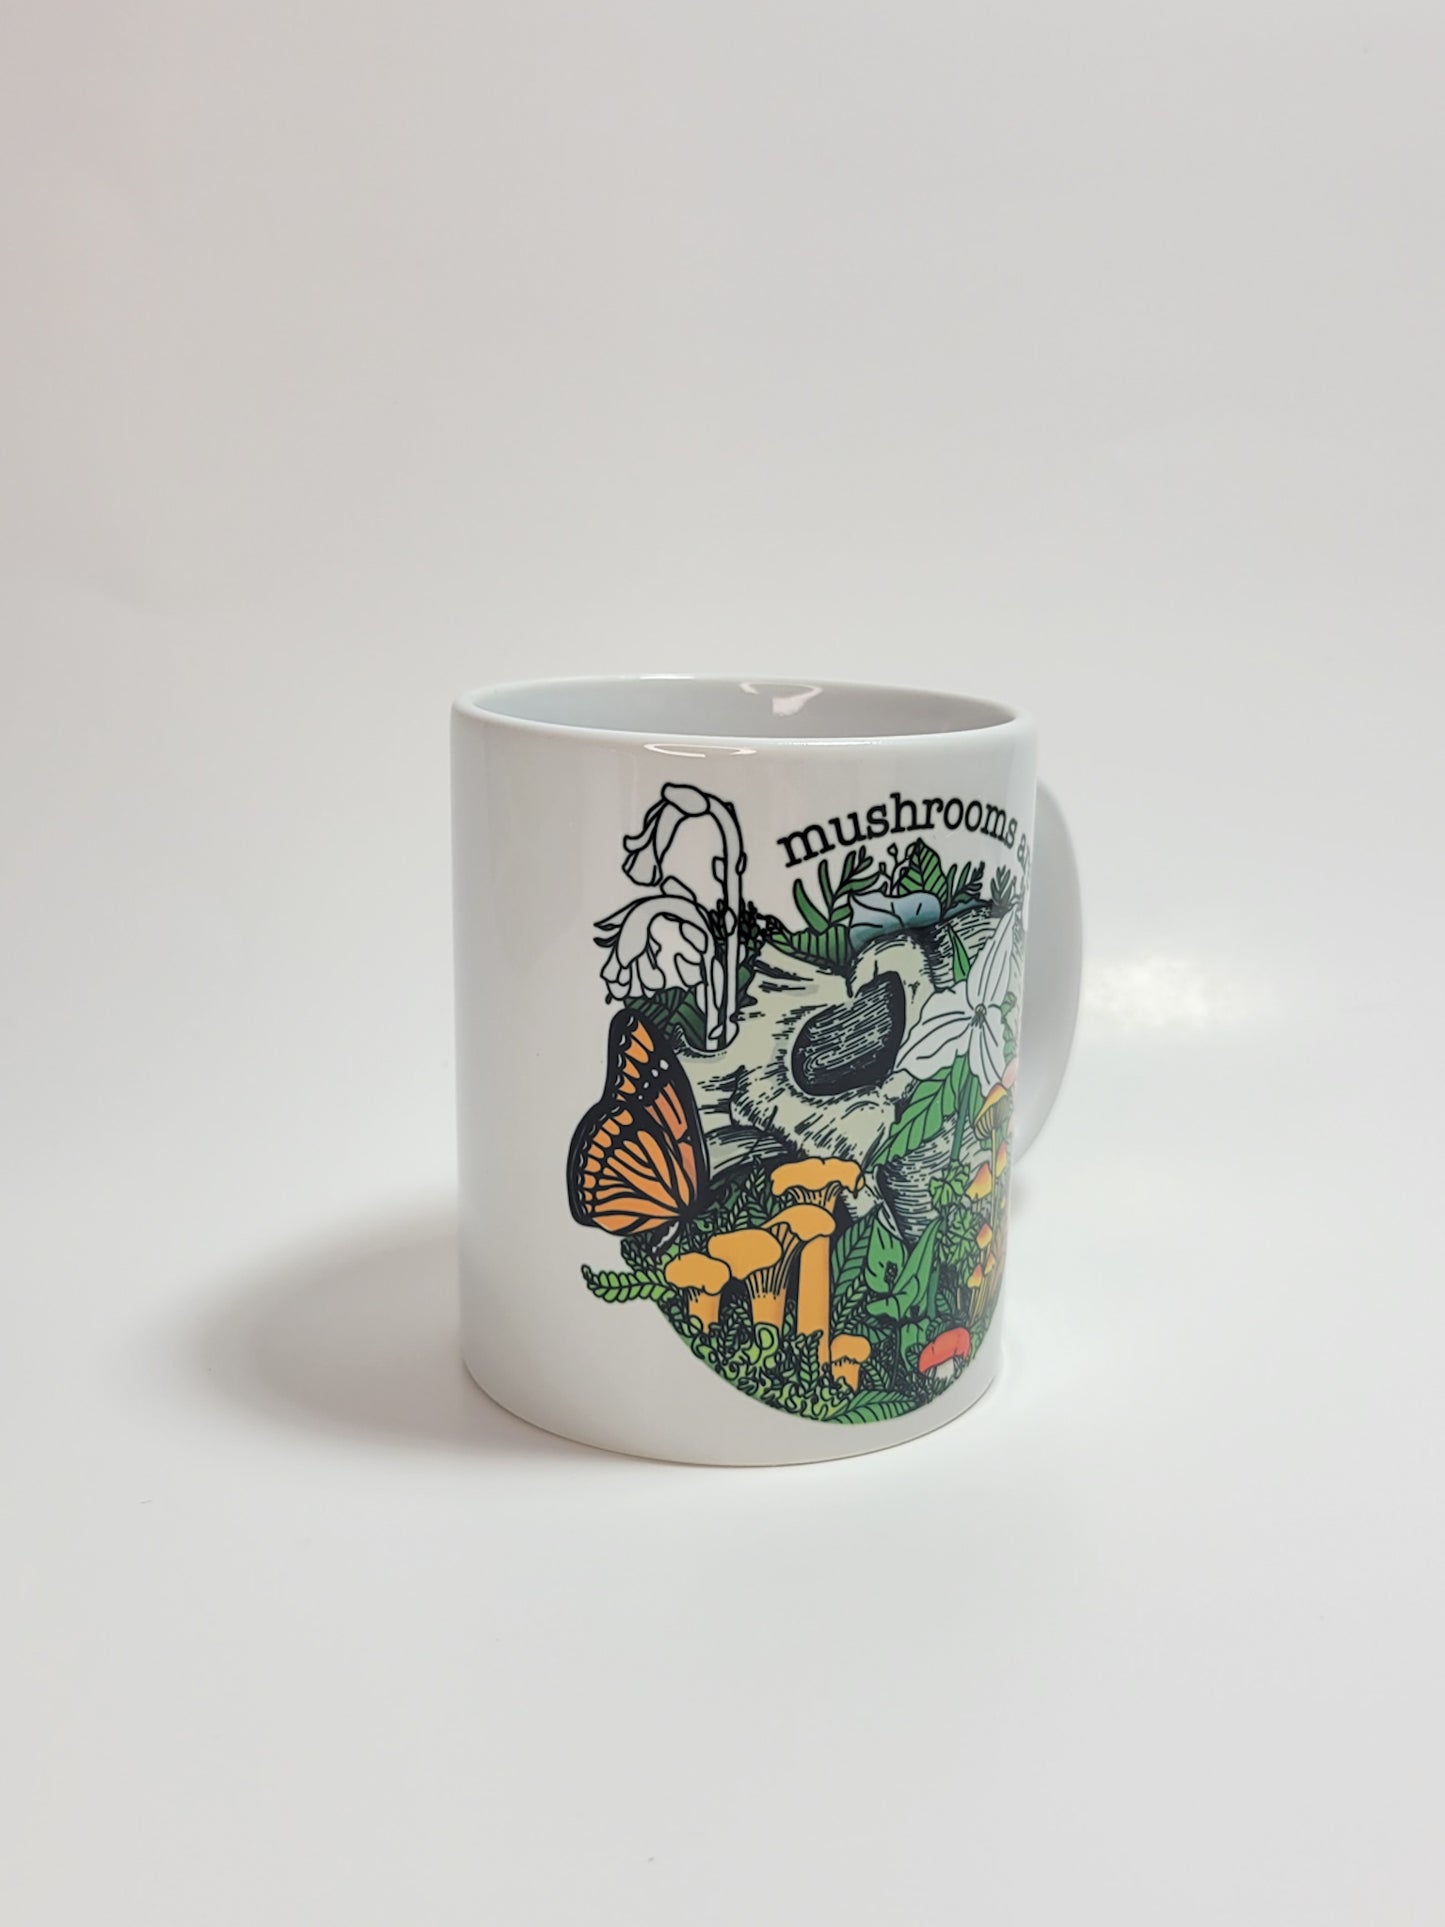 Mushrooms Are Life | Skull, Flowers and Mushroom Artwork on Ceramic Cup | 11oz/15oz Sizes